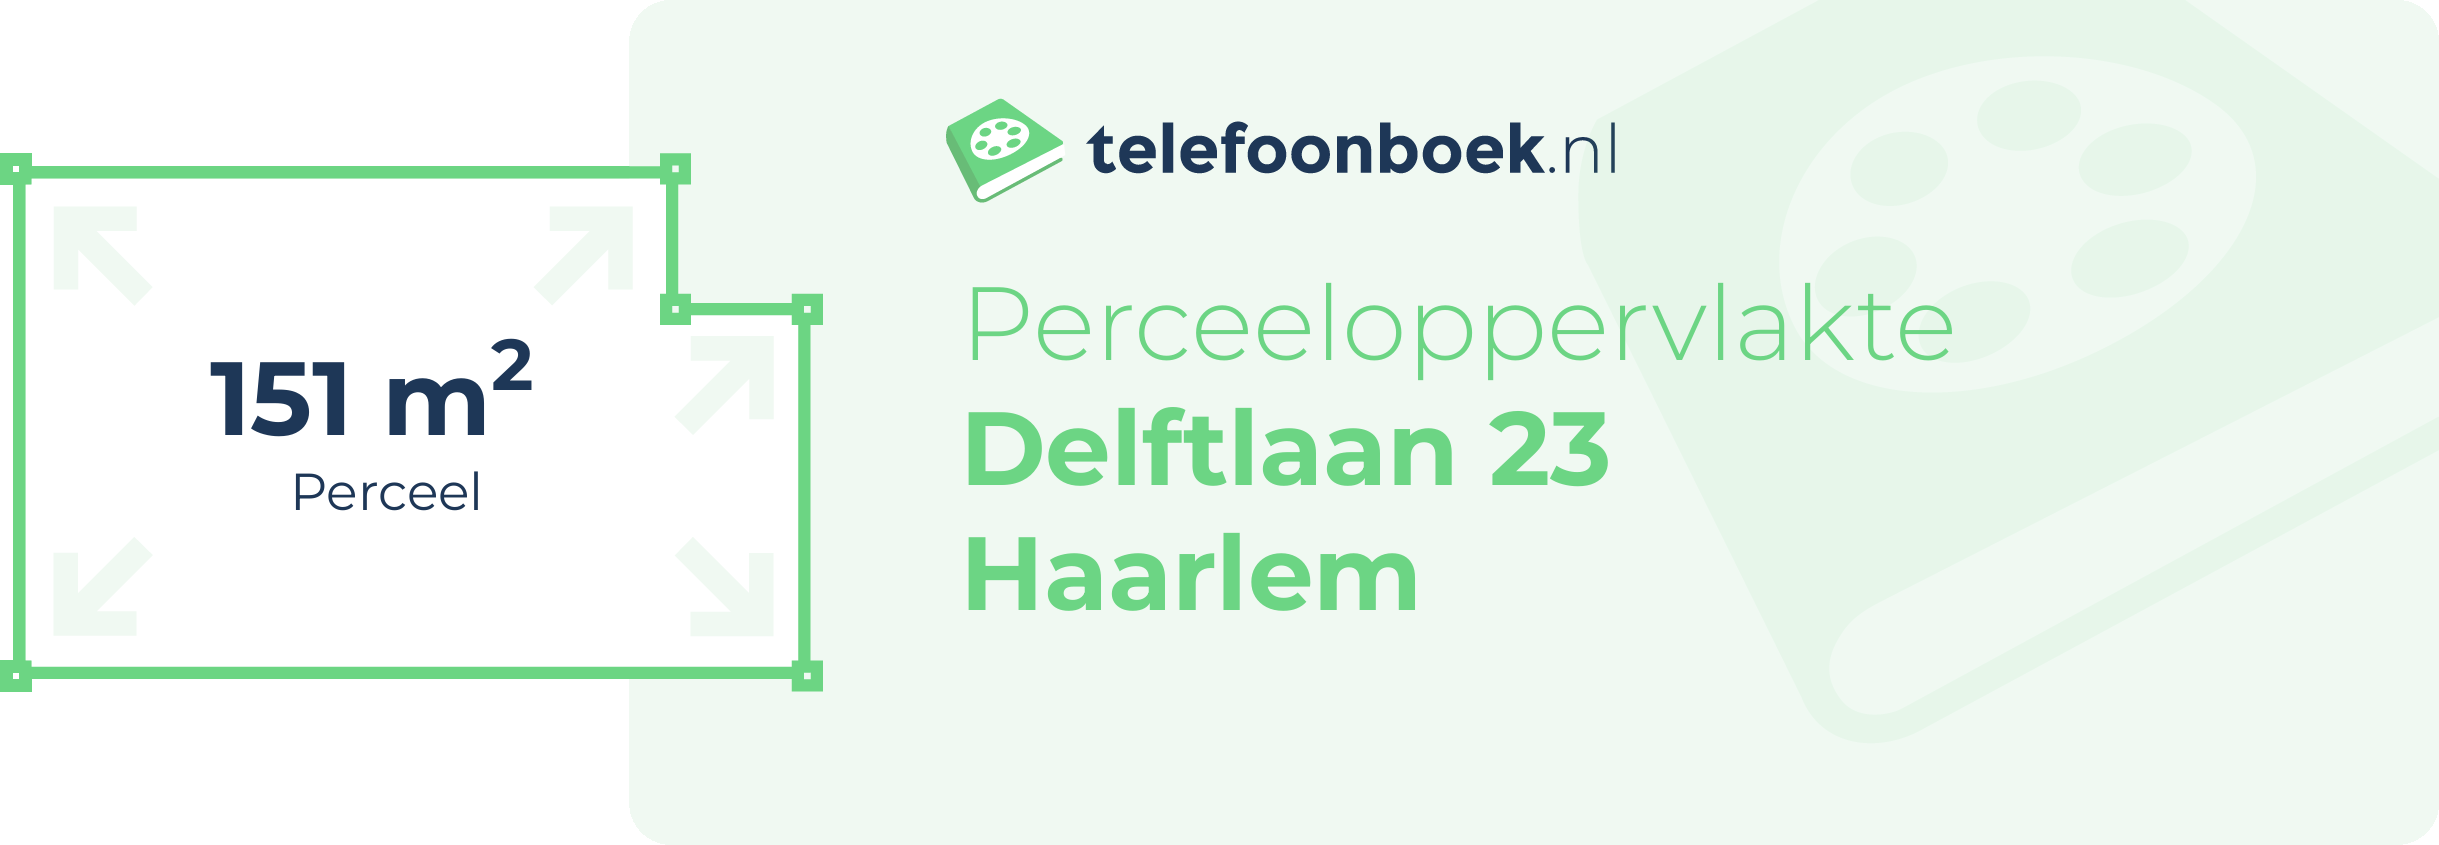 Perceeloppervlakte Delftlaan 23 Haarlem